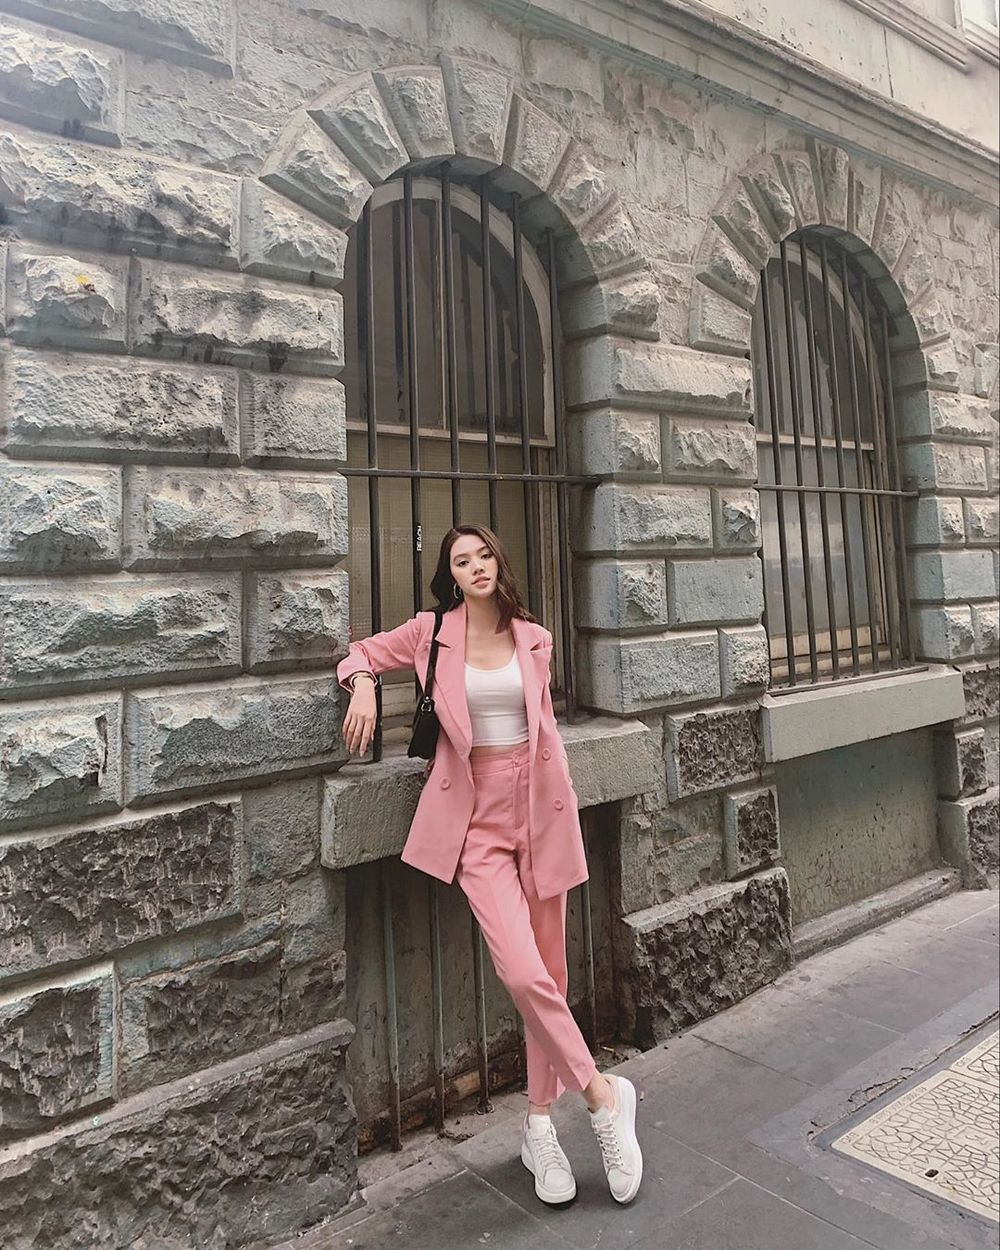  
"Hoa hậu con nhà giàu" Jolie Nguyễn thanh lịch với bộ suit hồng, mix cùng áo thun và giày sneaker trắng.